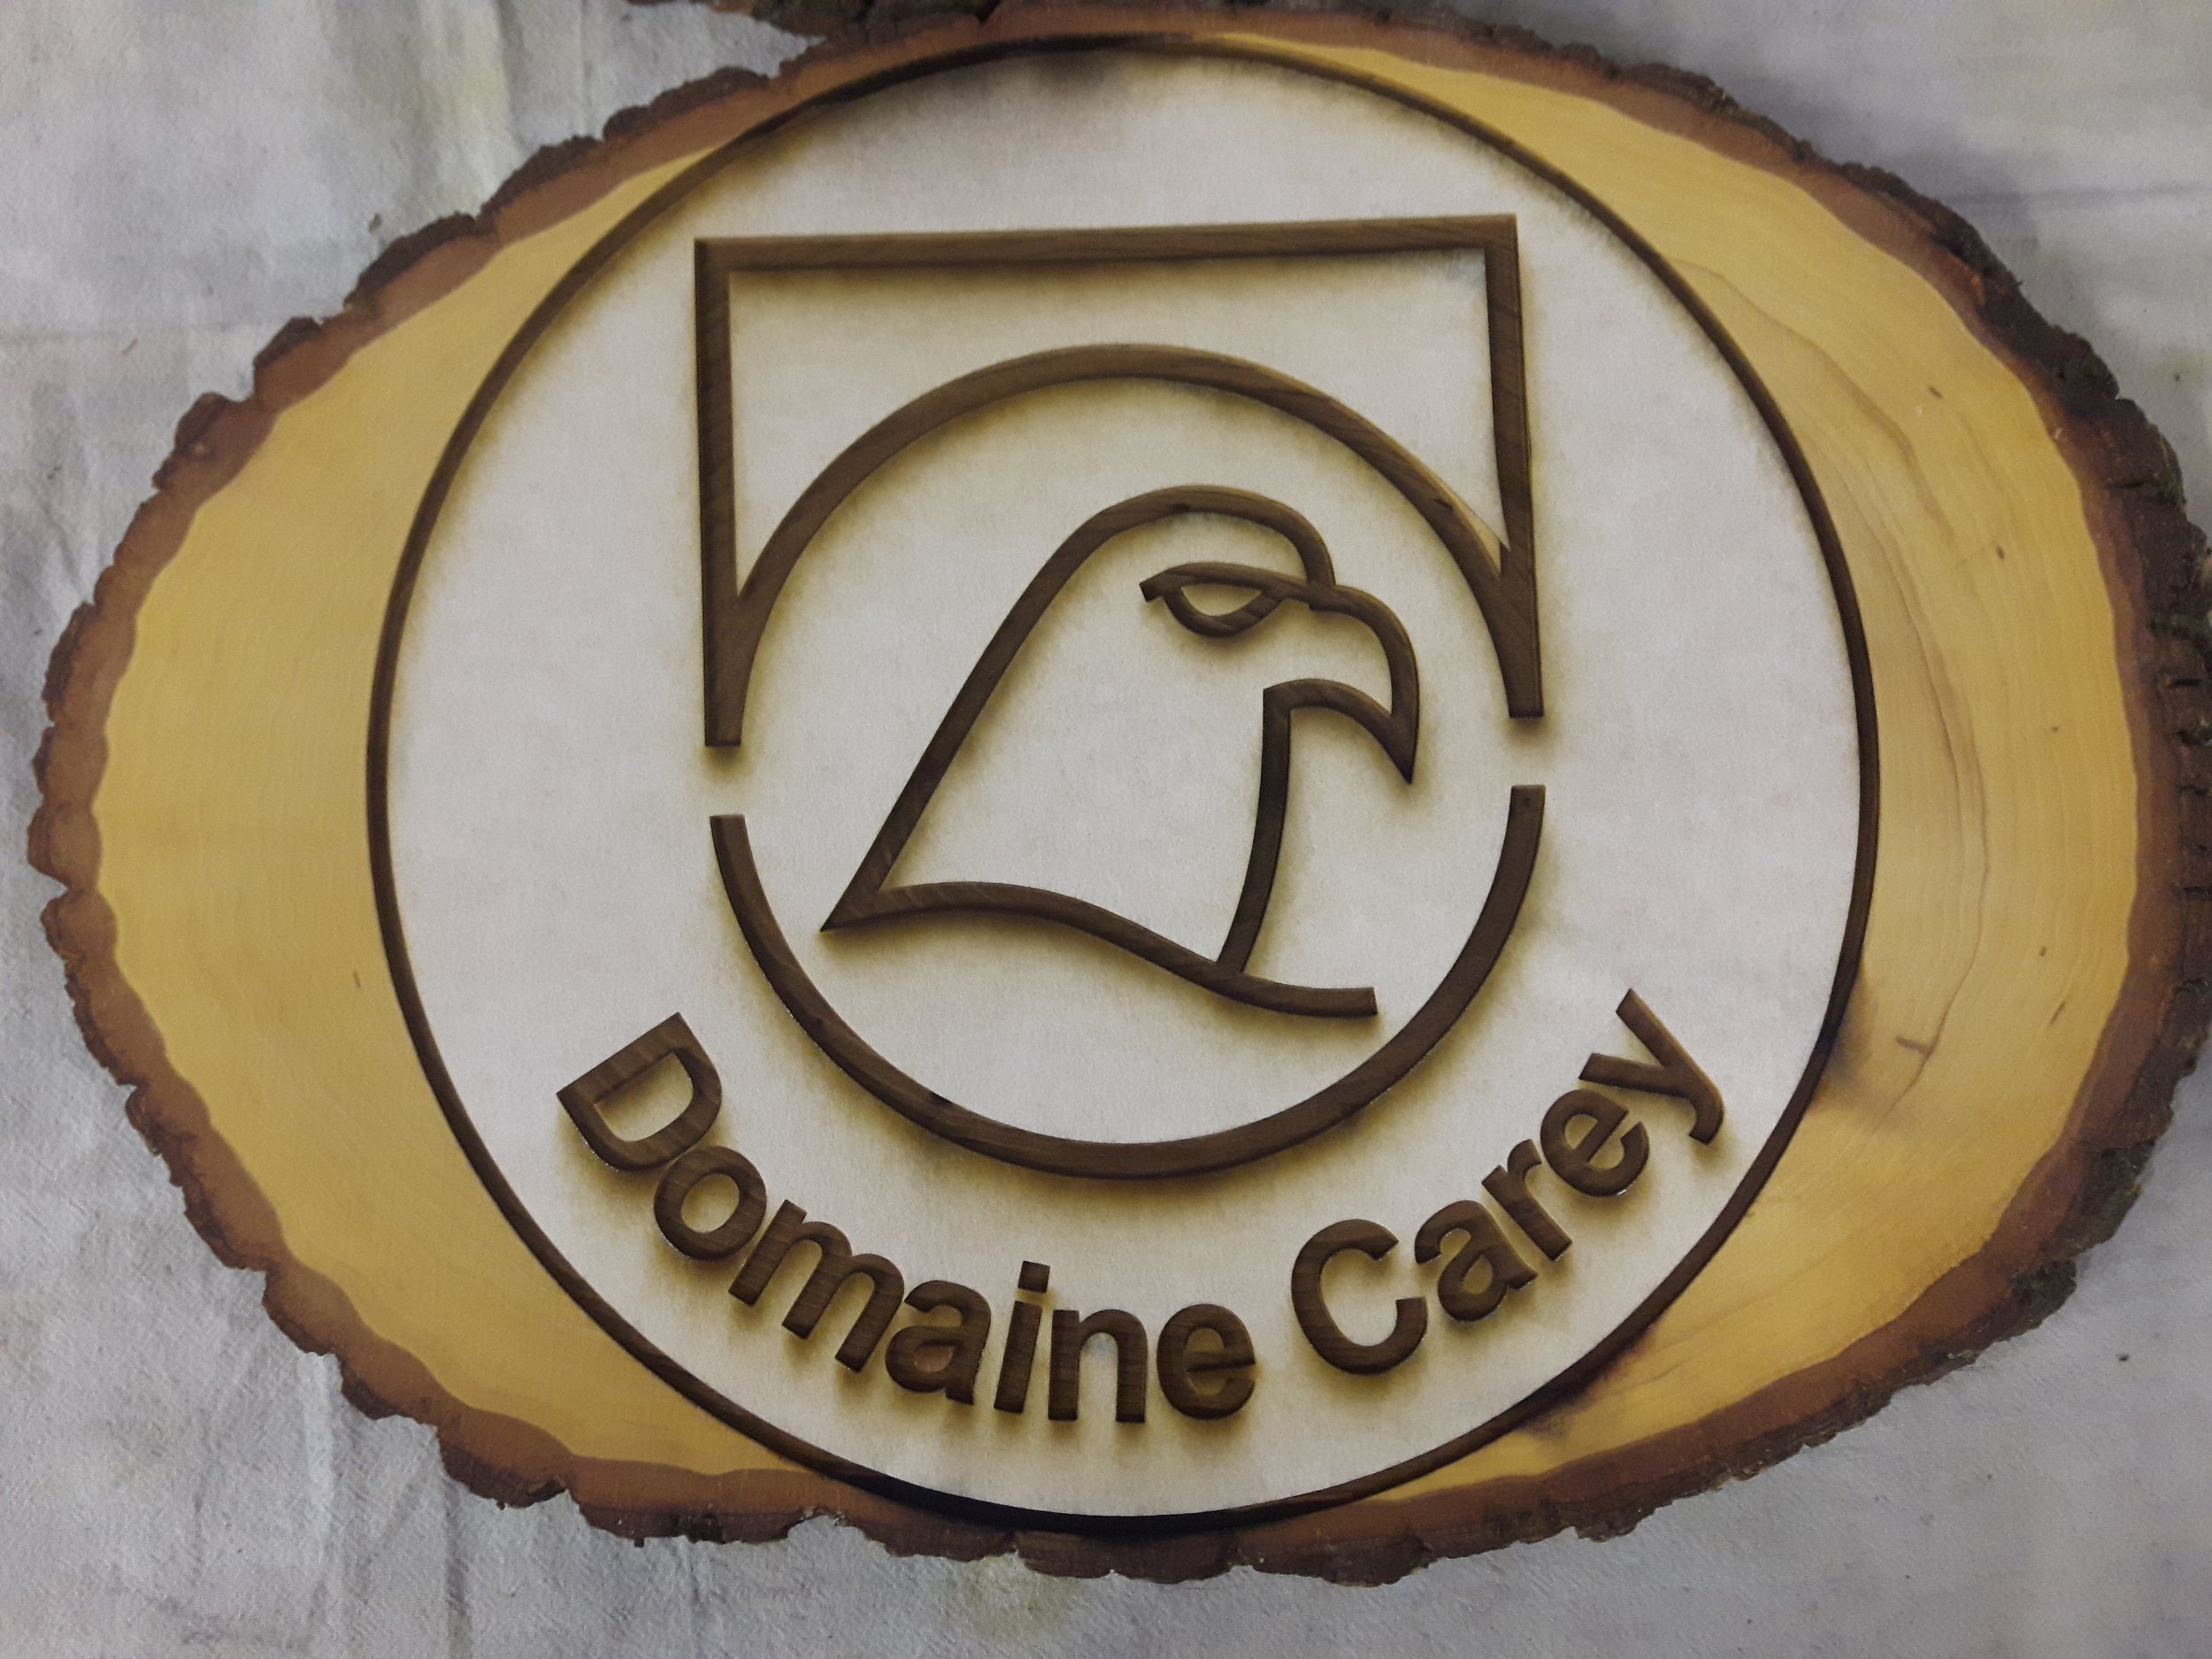 Enseigne en bois avec une bordure naturelle irrégulière, présentant un logo stylisé d'un aigle avec l'inscription 'Domaine Carey' réalisé par Systana Gavure Laser